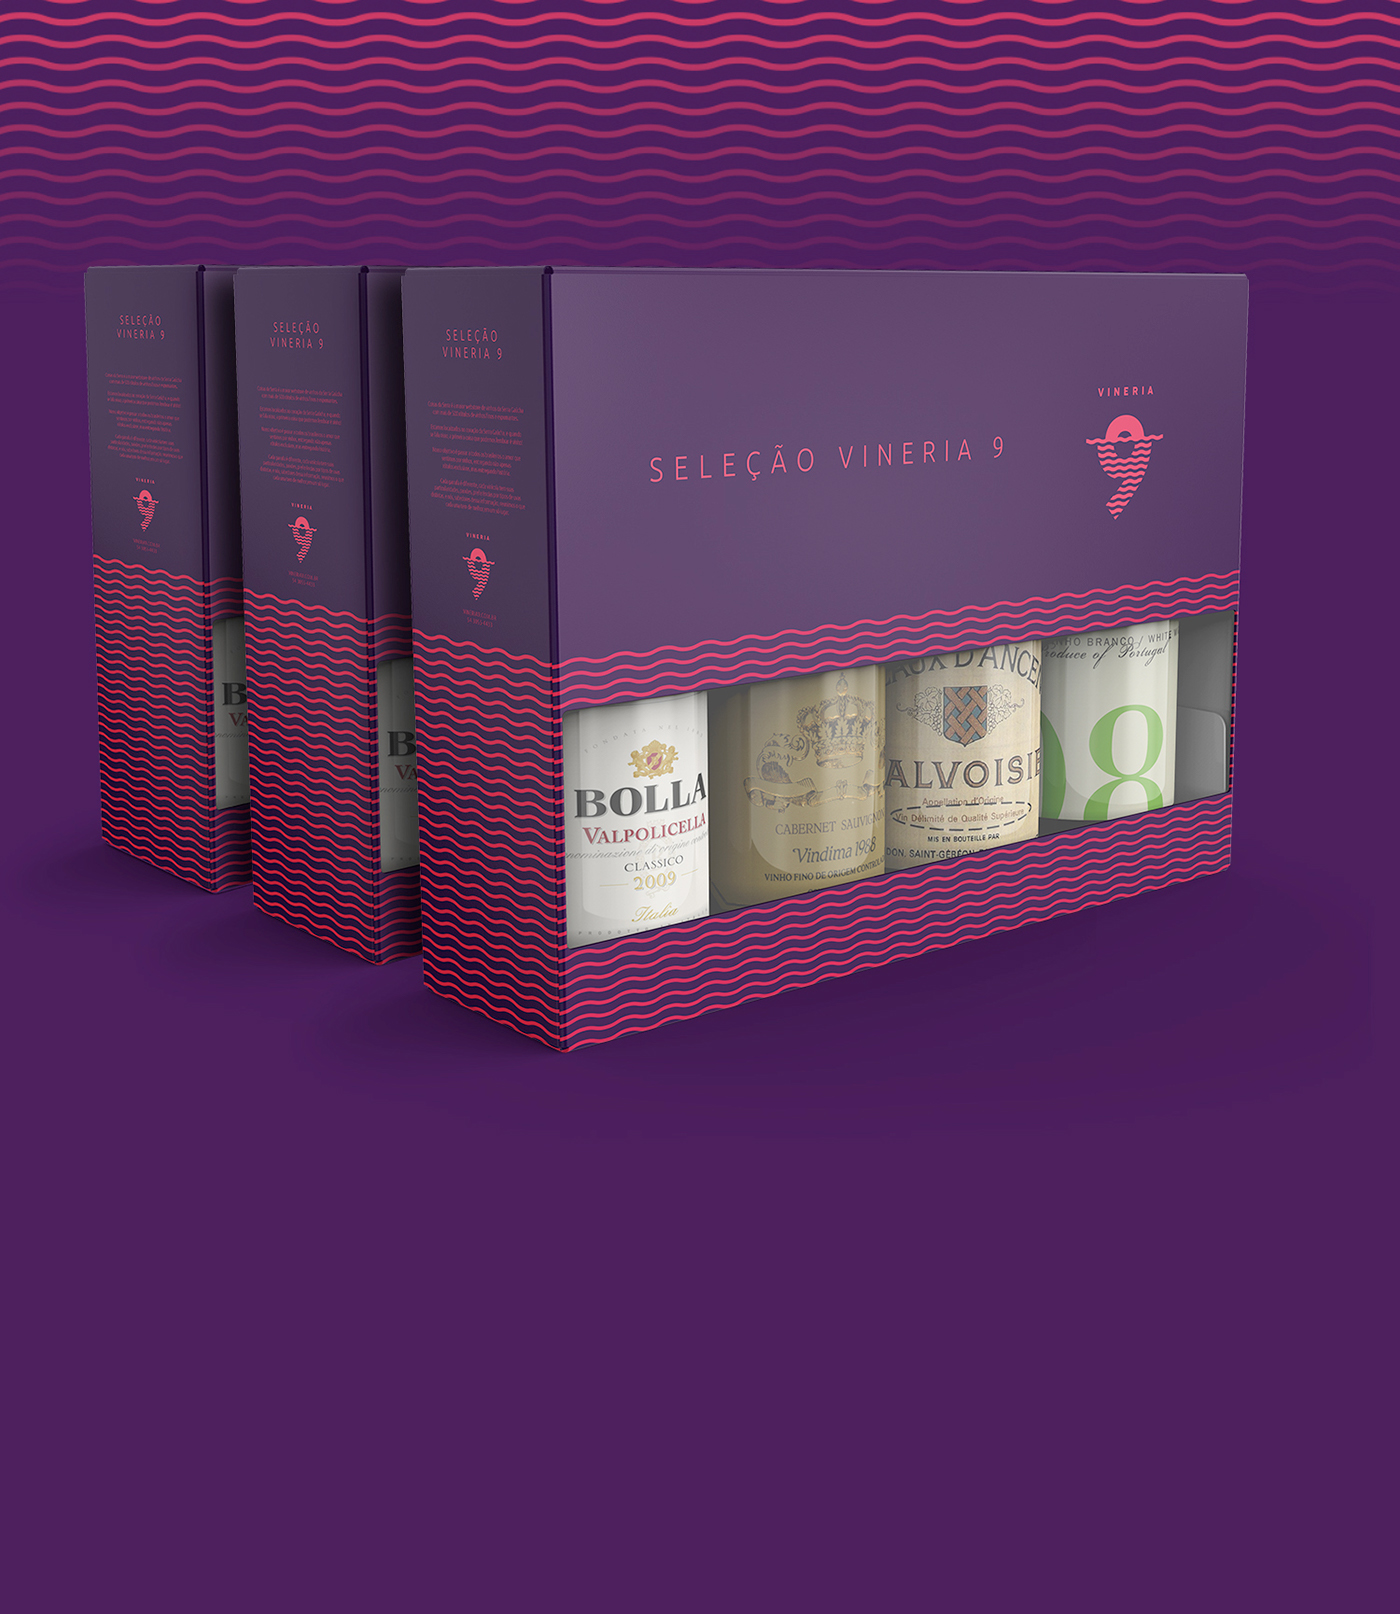 wine vineria9 e-commerce Design de Marca identidade visual corporativa logo visual identity